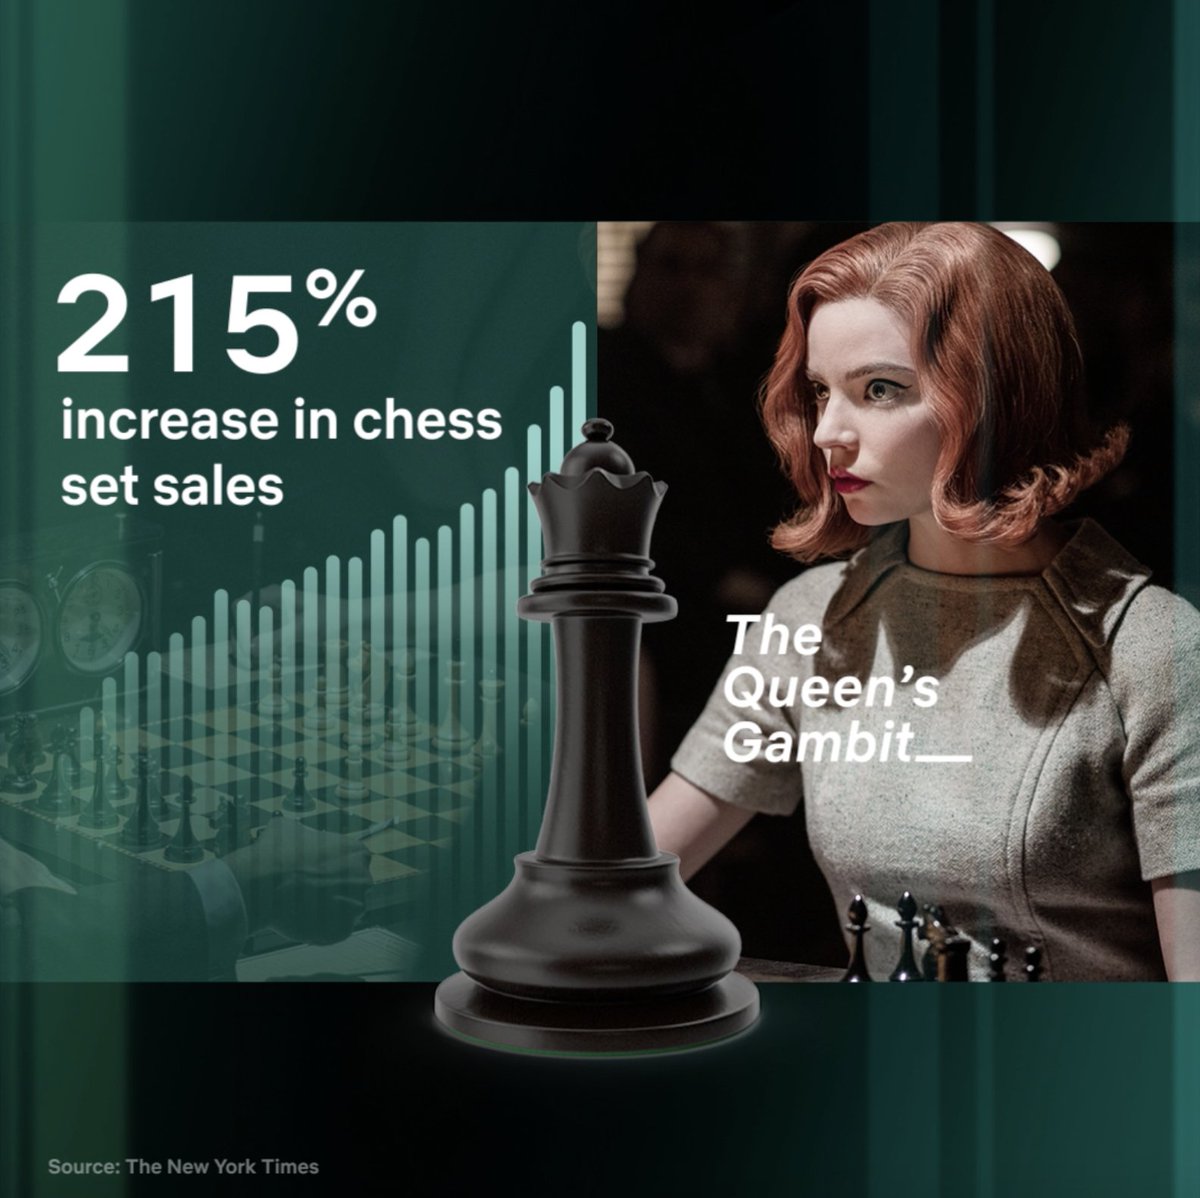 O Gambito da Rainha' erra tradução, mas desmistifica o xadrez - 12/11/2020  - Ilustrada - Folha